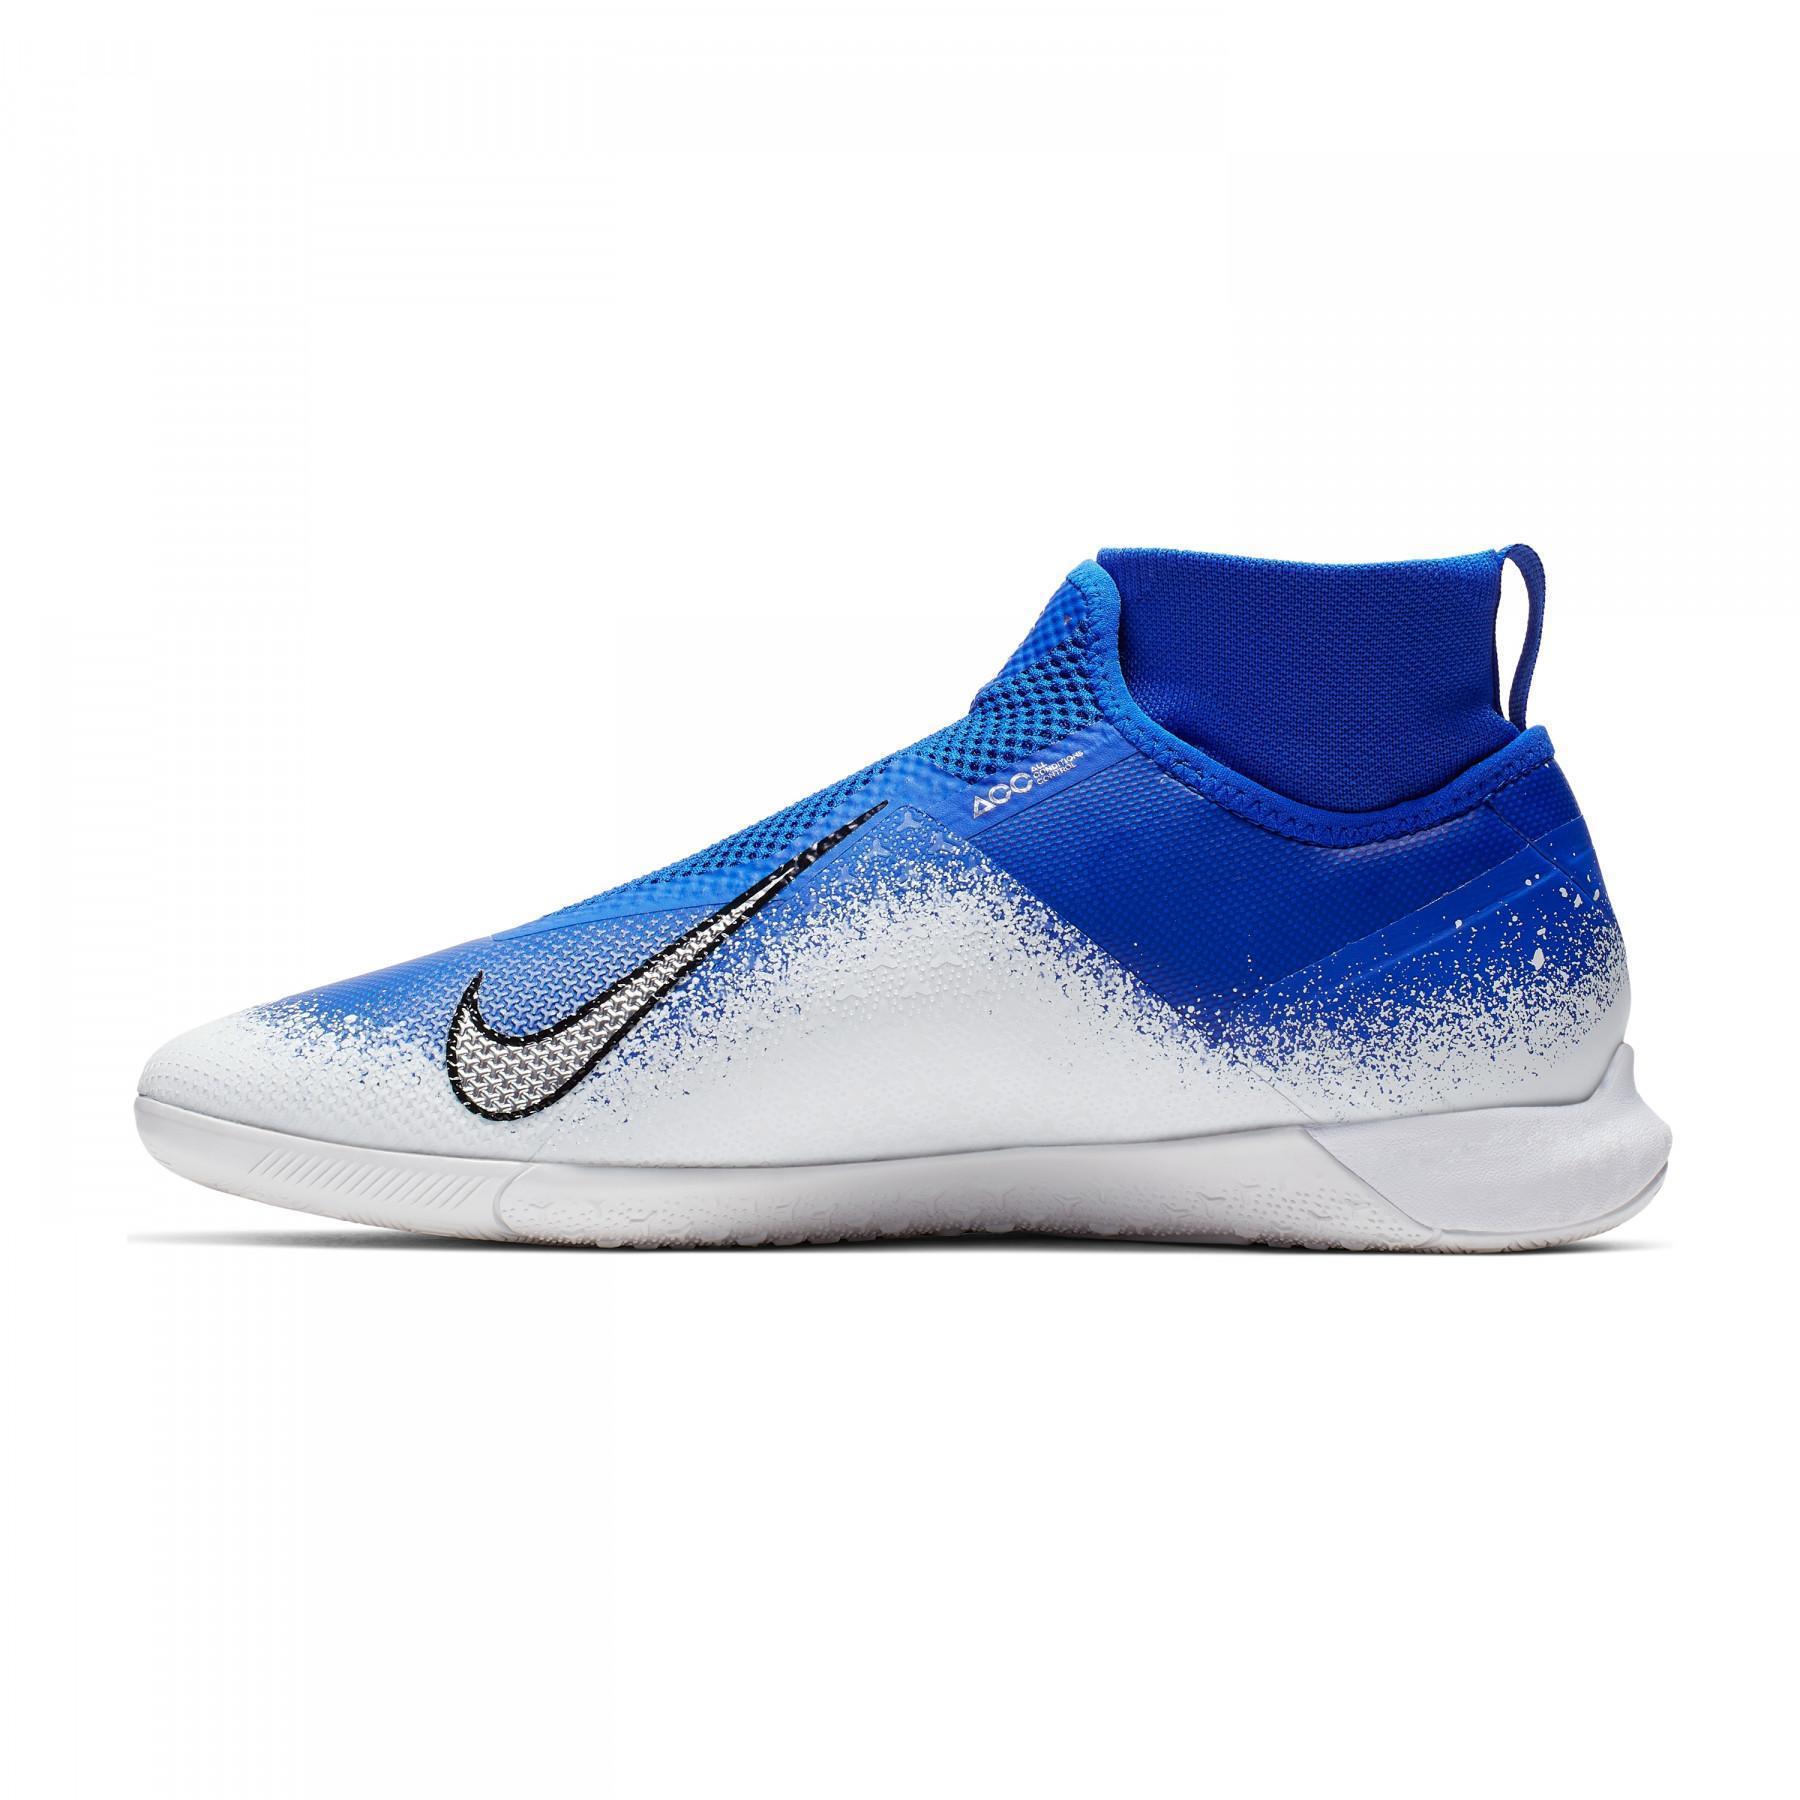 Chaussures de football Nike React Phantom Vision Pro DF IC